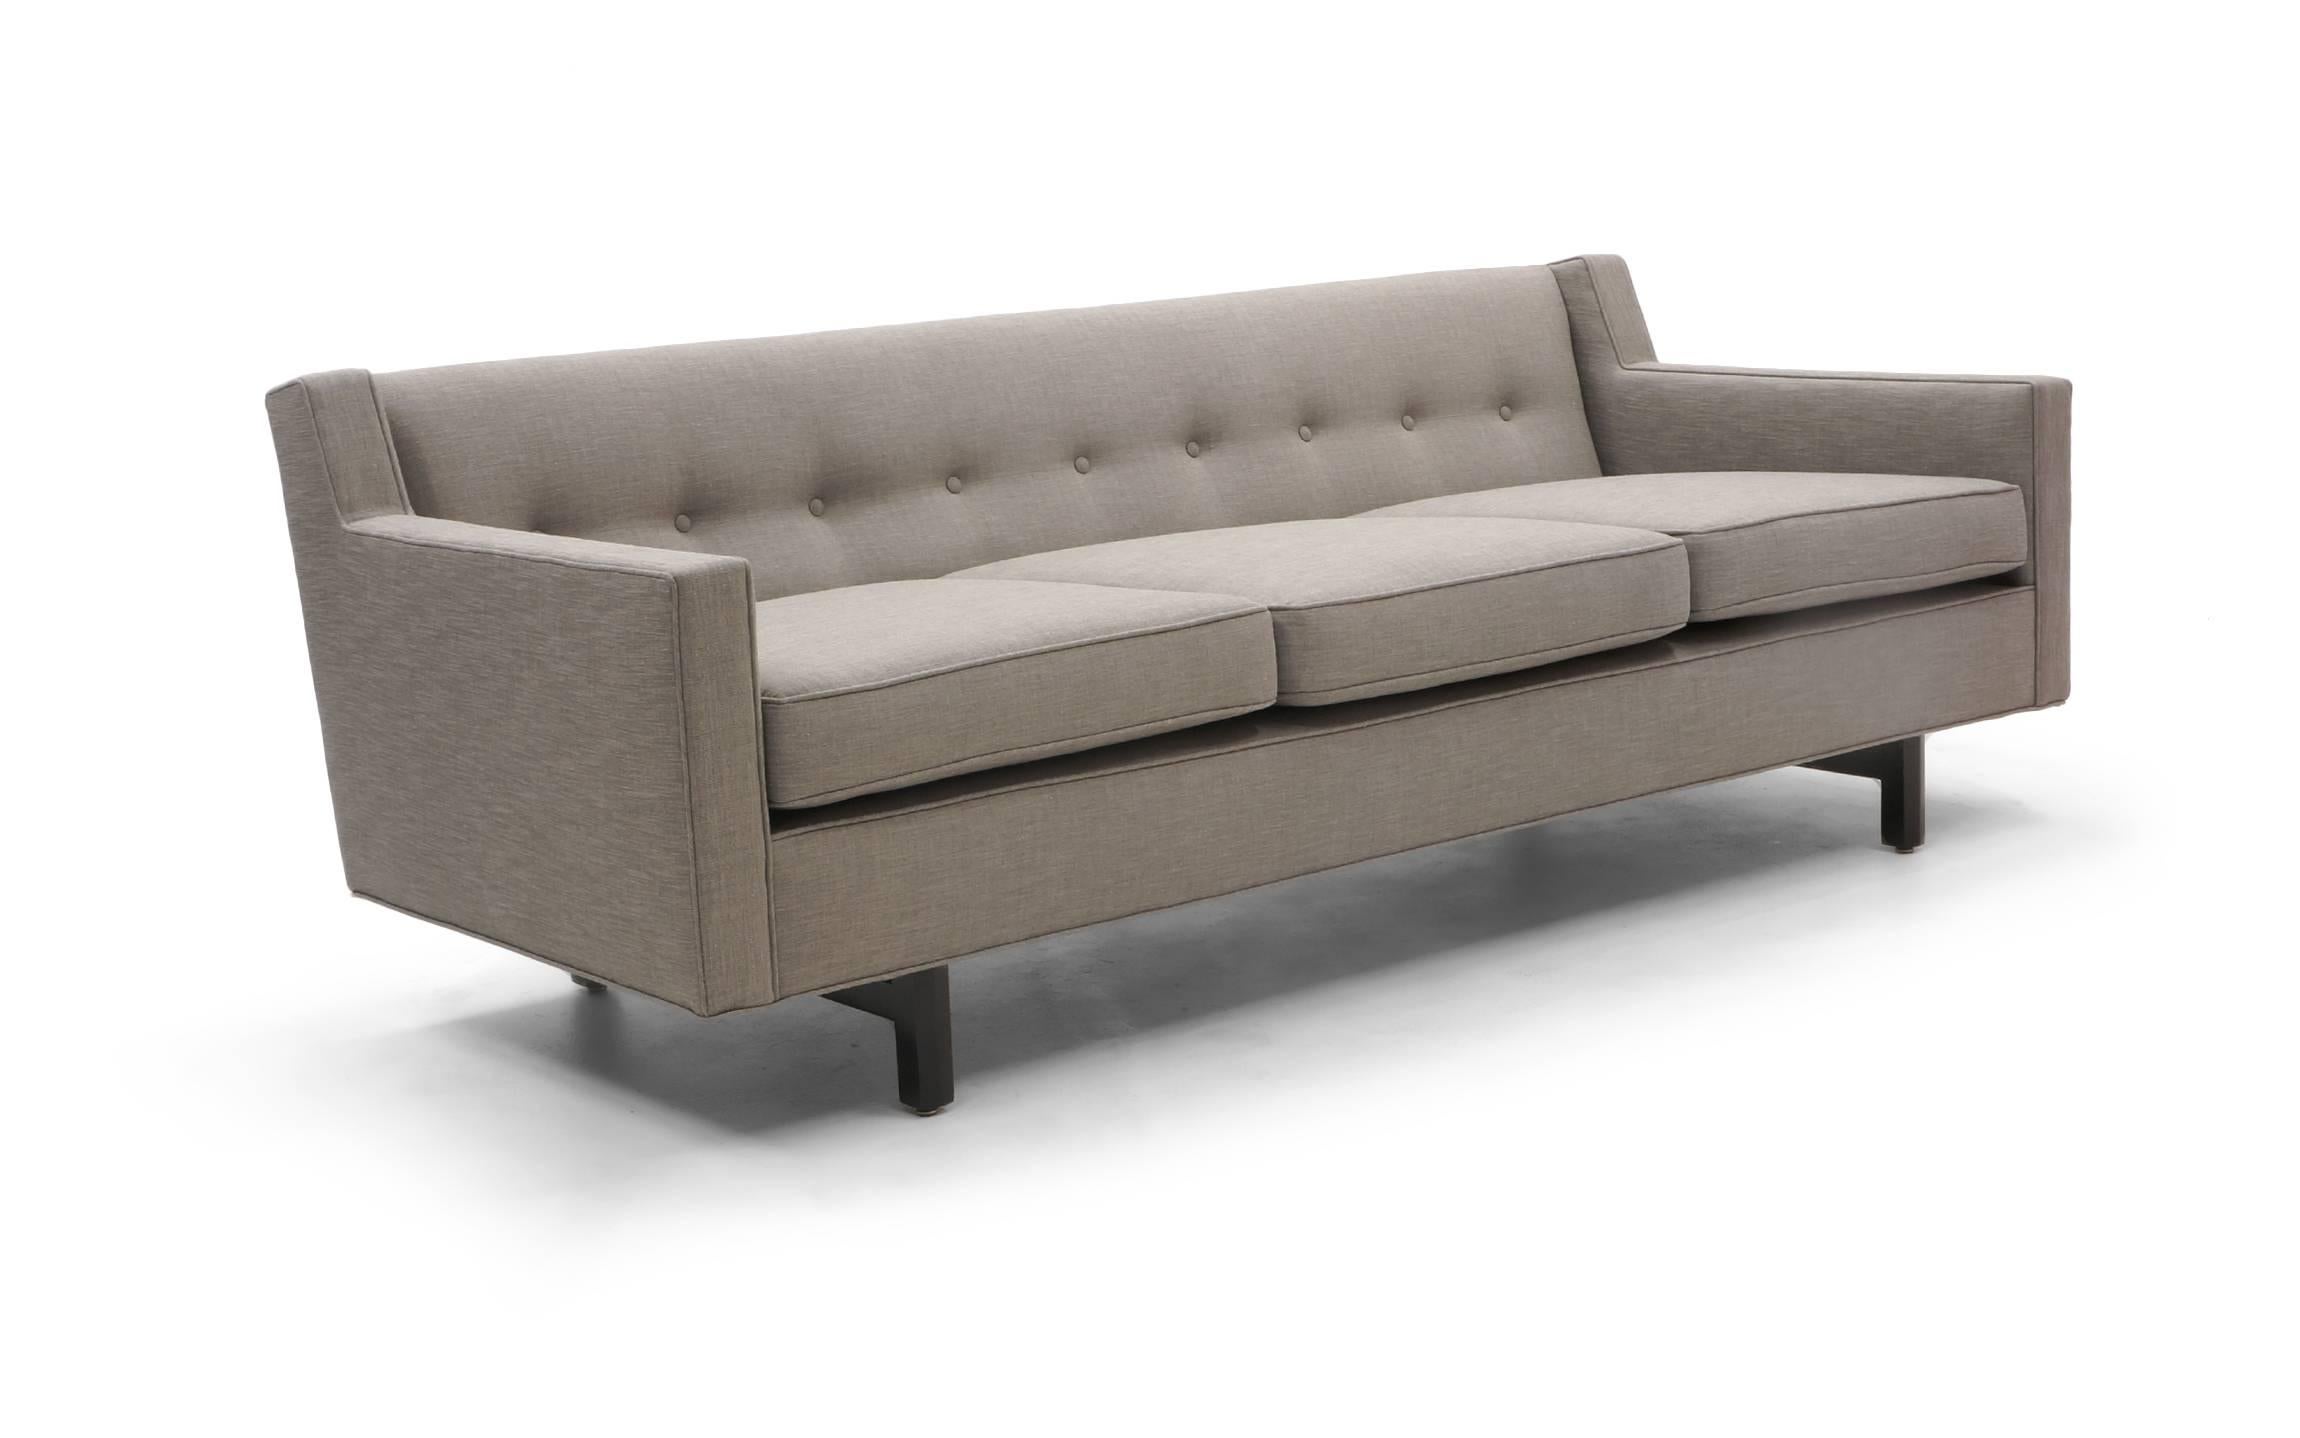 American Three-Seat Sofa by Edward Wormley for Dunbar, Fully Restored, Like New